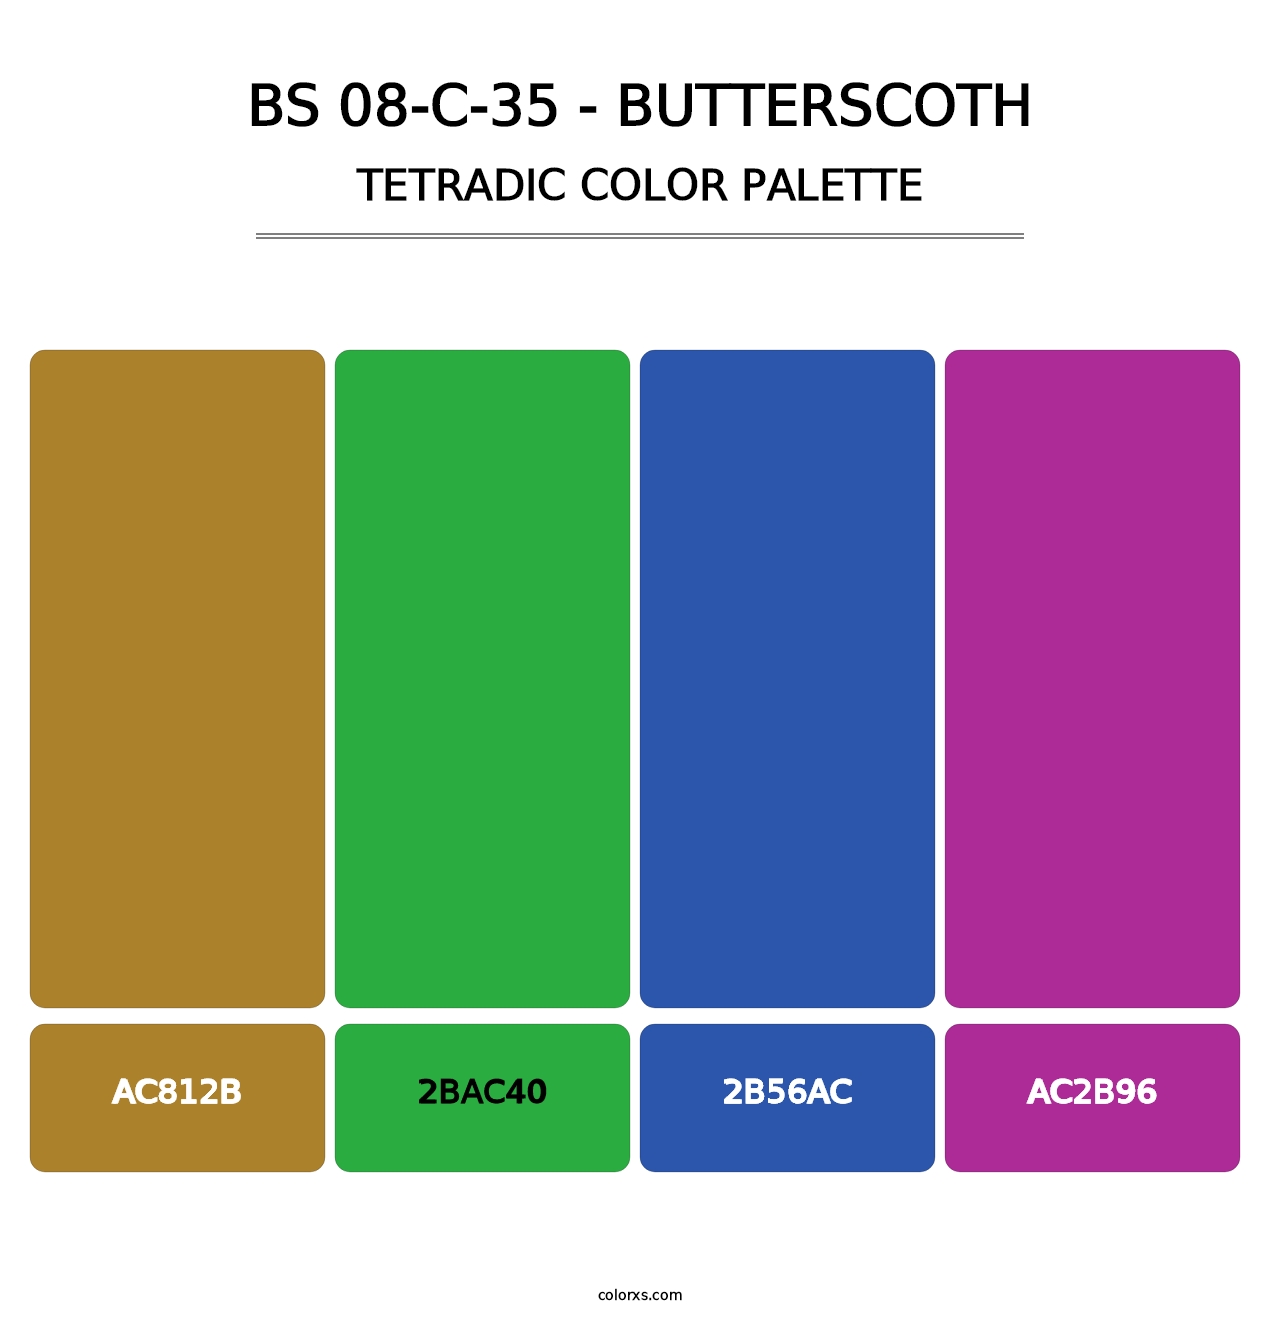 BS 08-C-35 - Butterscoth - Tetradic Color Palette